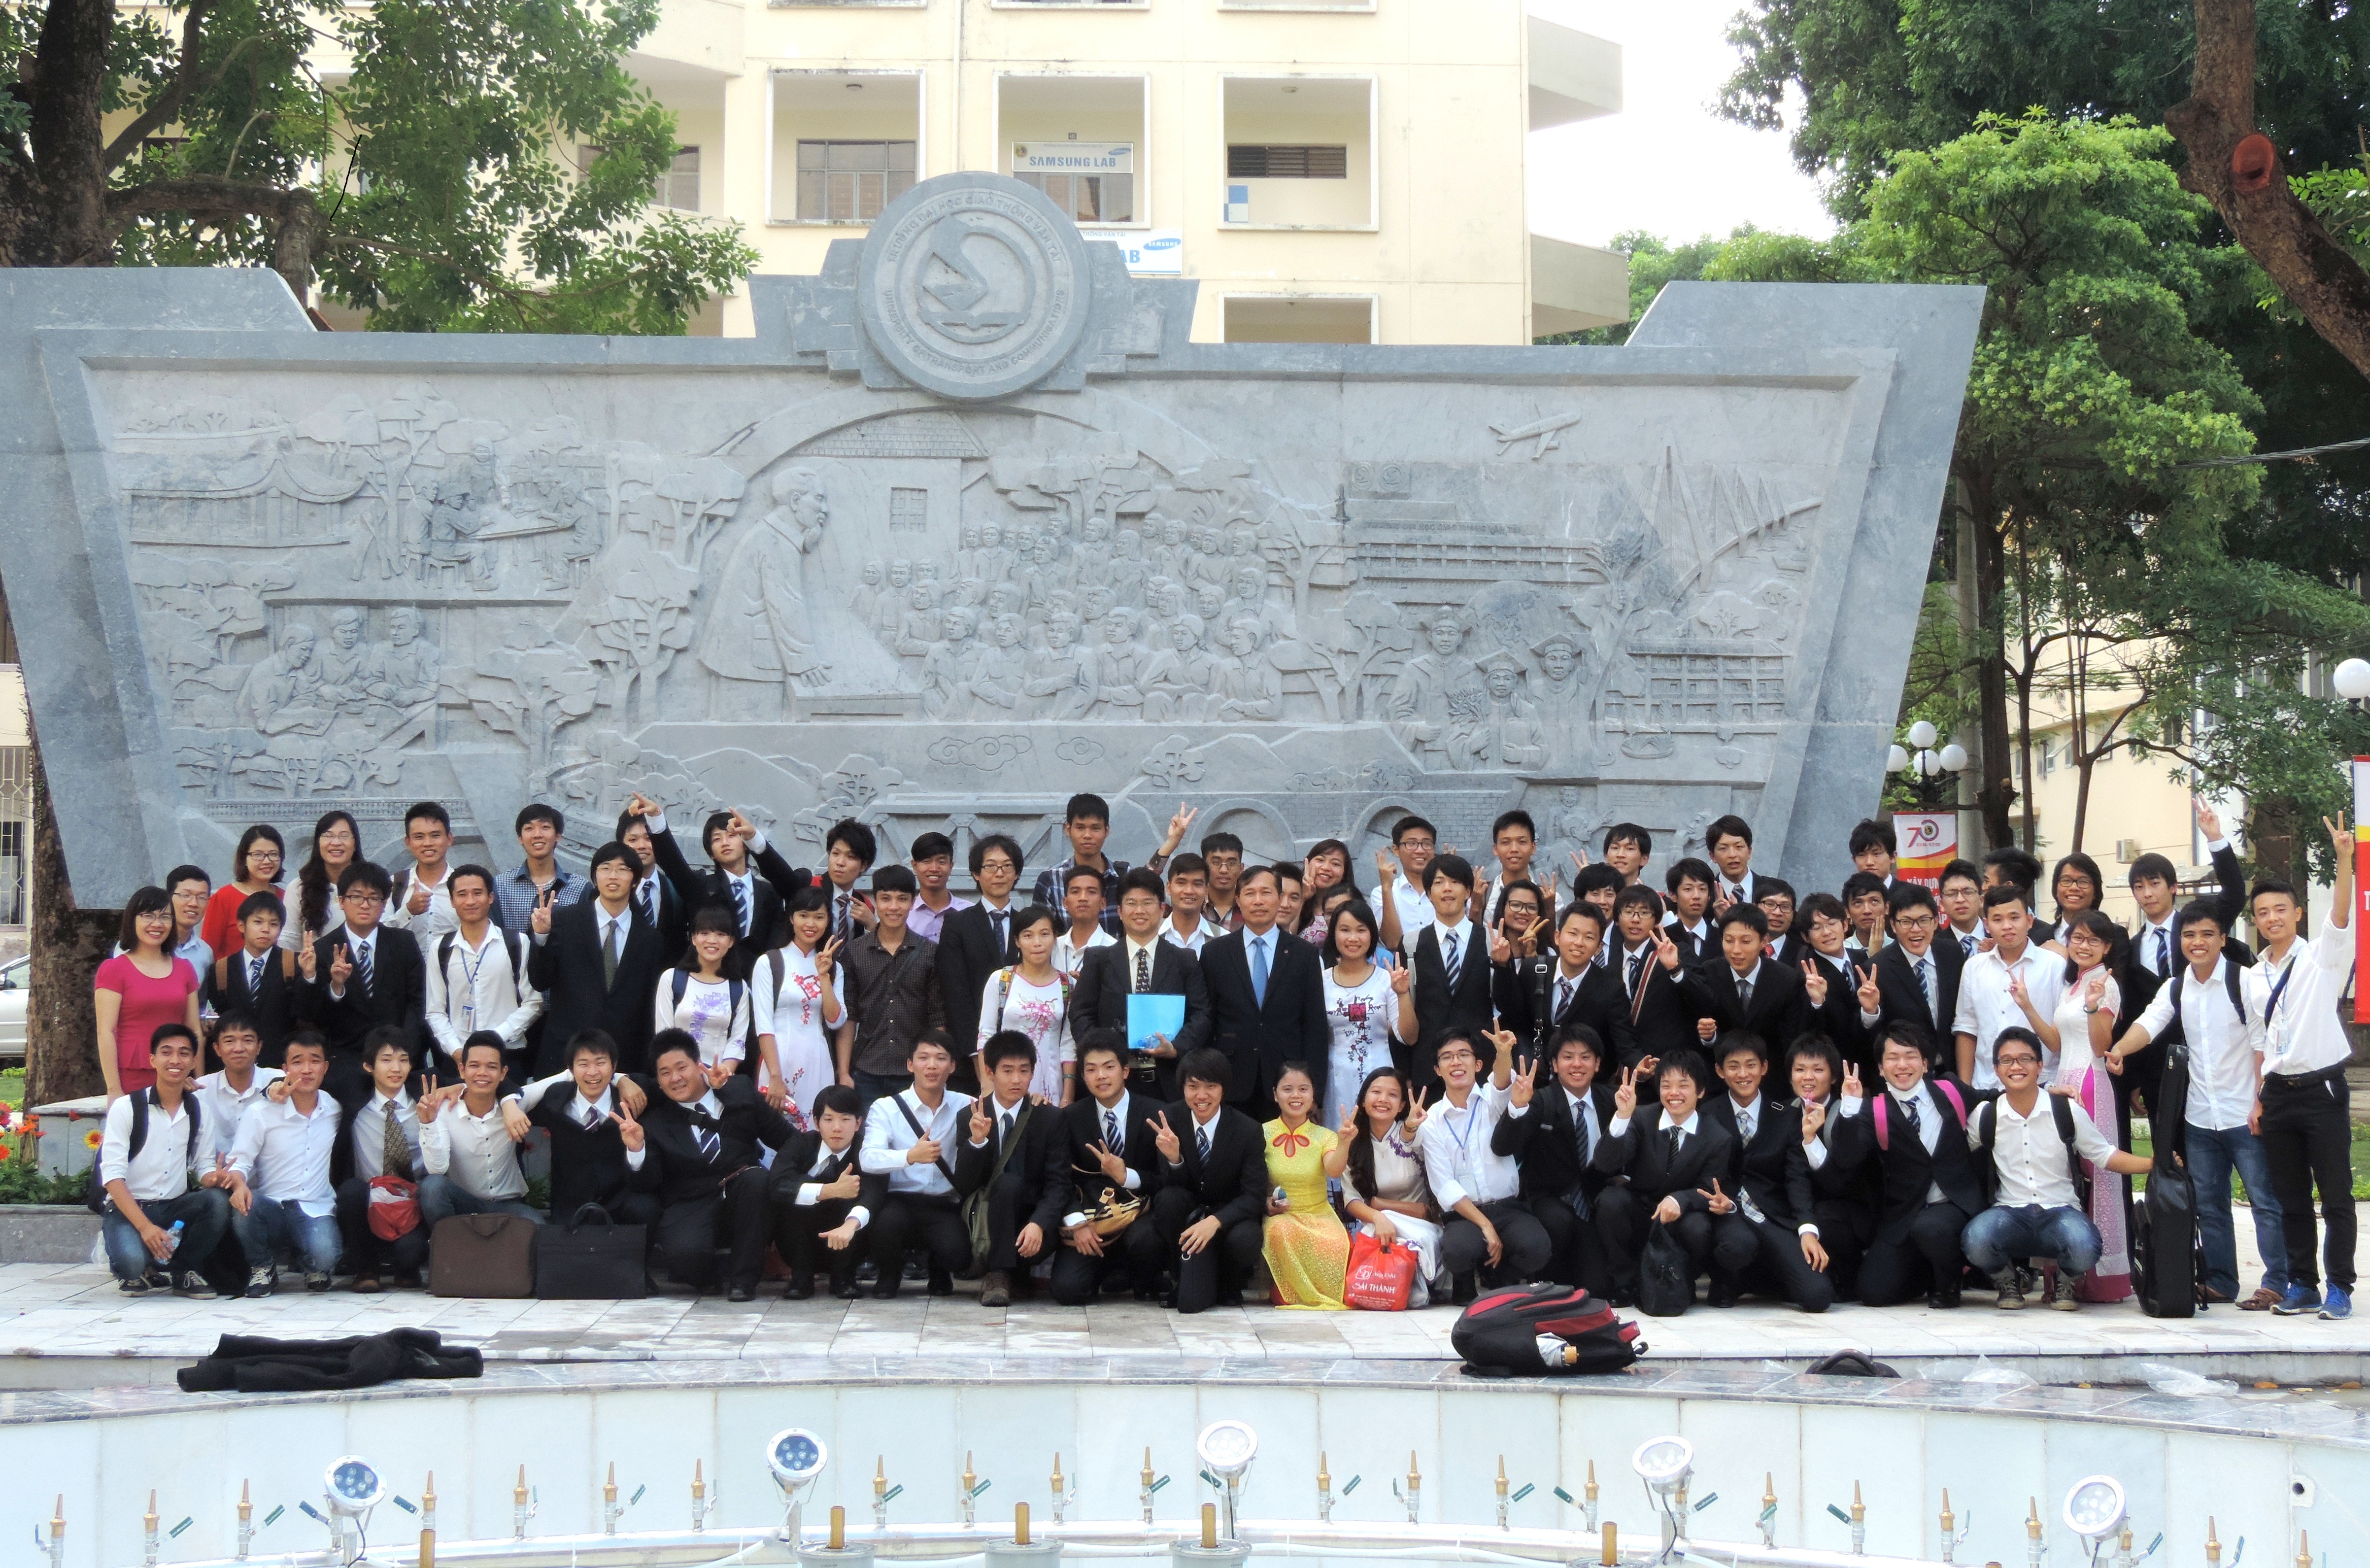 Giao lưu sinh viên với Trường đại học MAIZURU, Nhật Bản